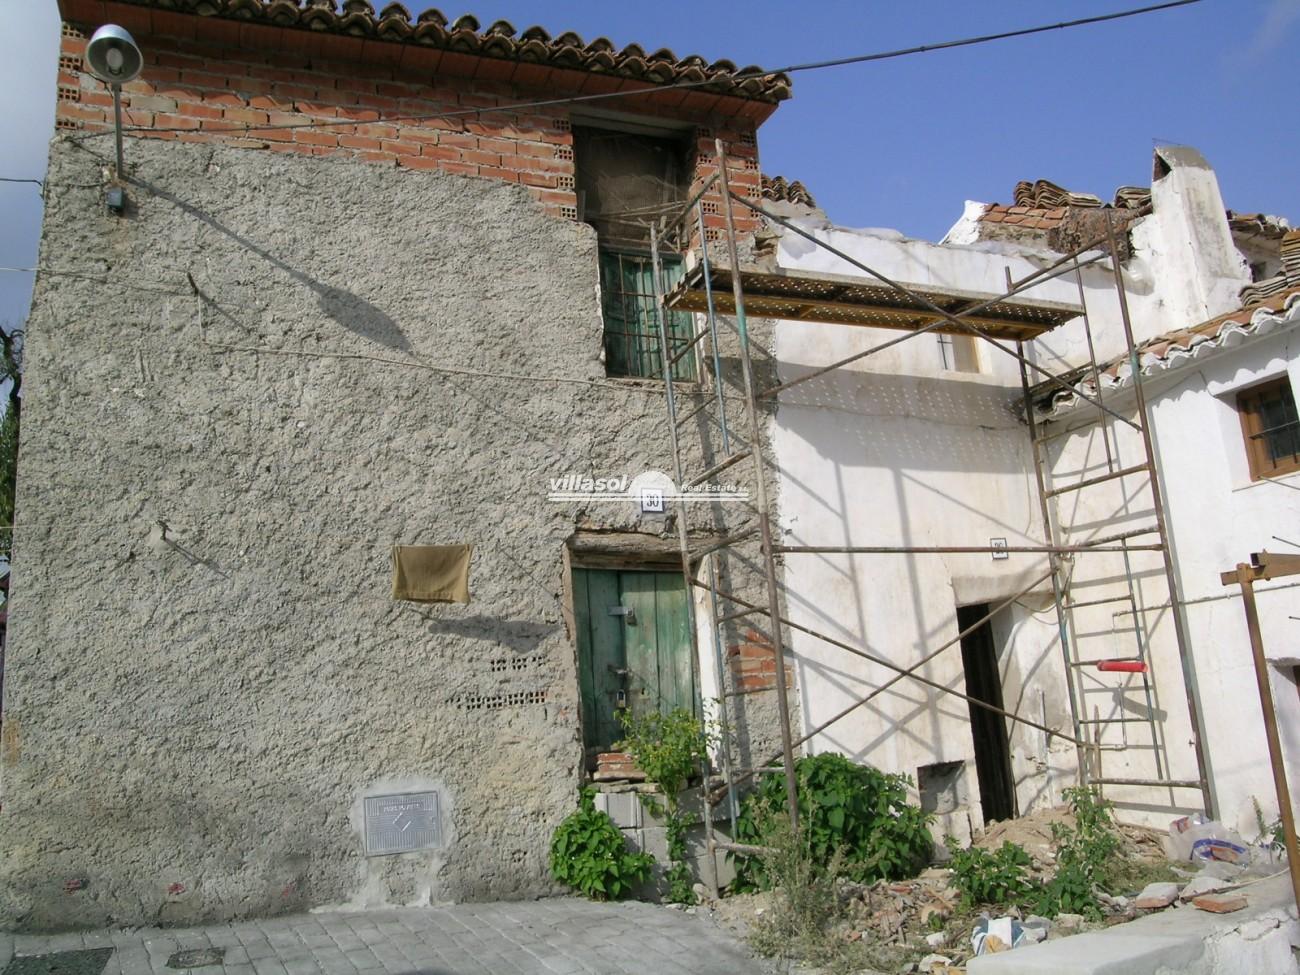 Village/town house for sale in Viñuela, Málaga, Spain